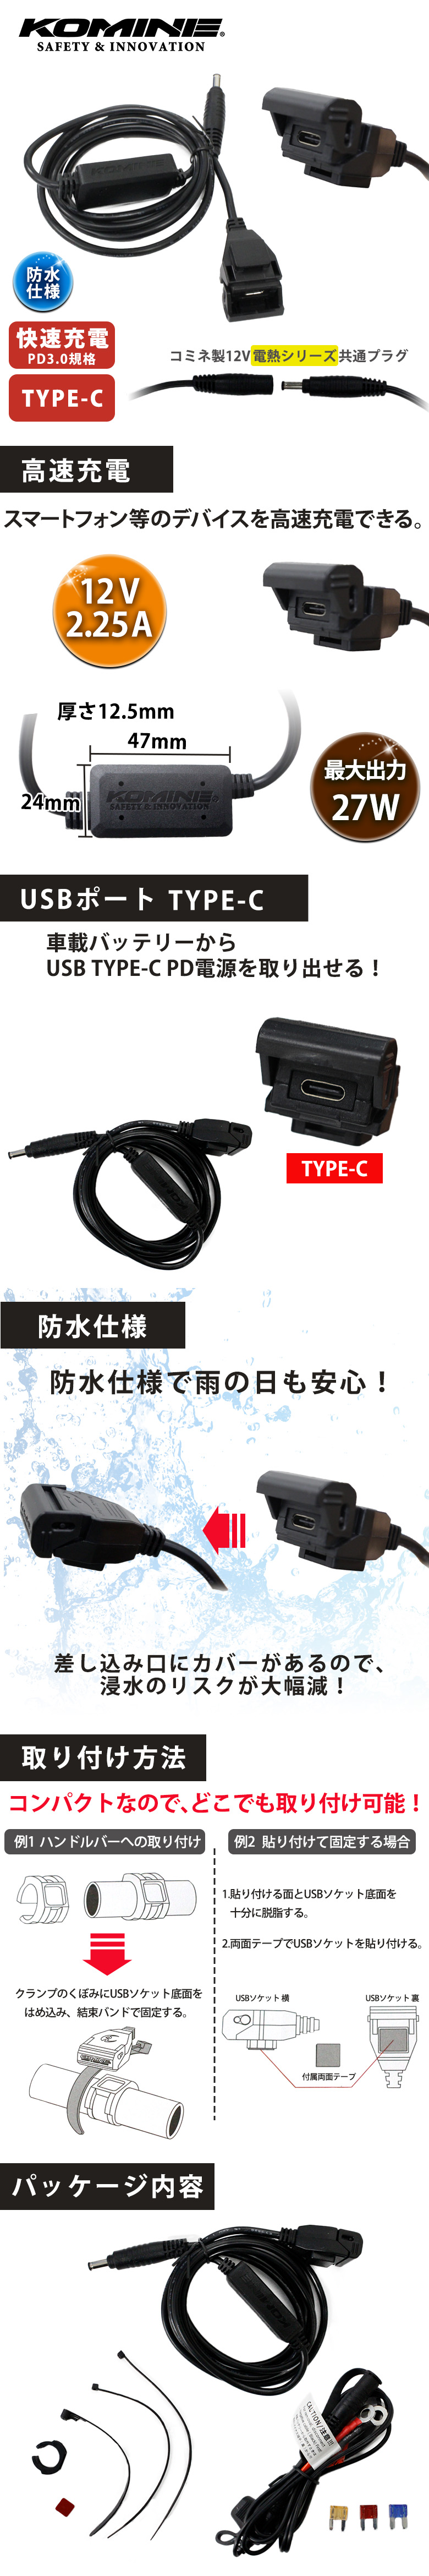 コミネ EK-213 USB type-C PD パワーサプライ シングル KOMINE 08-213